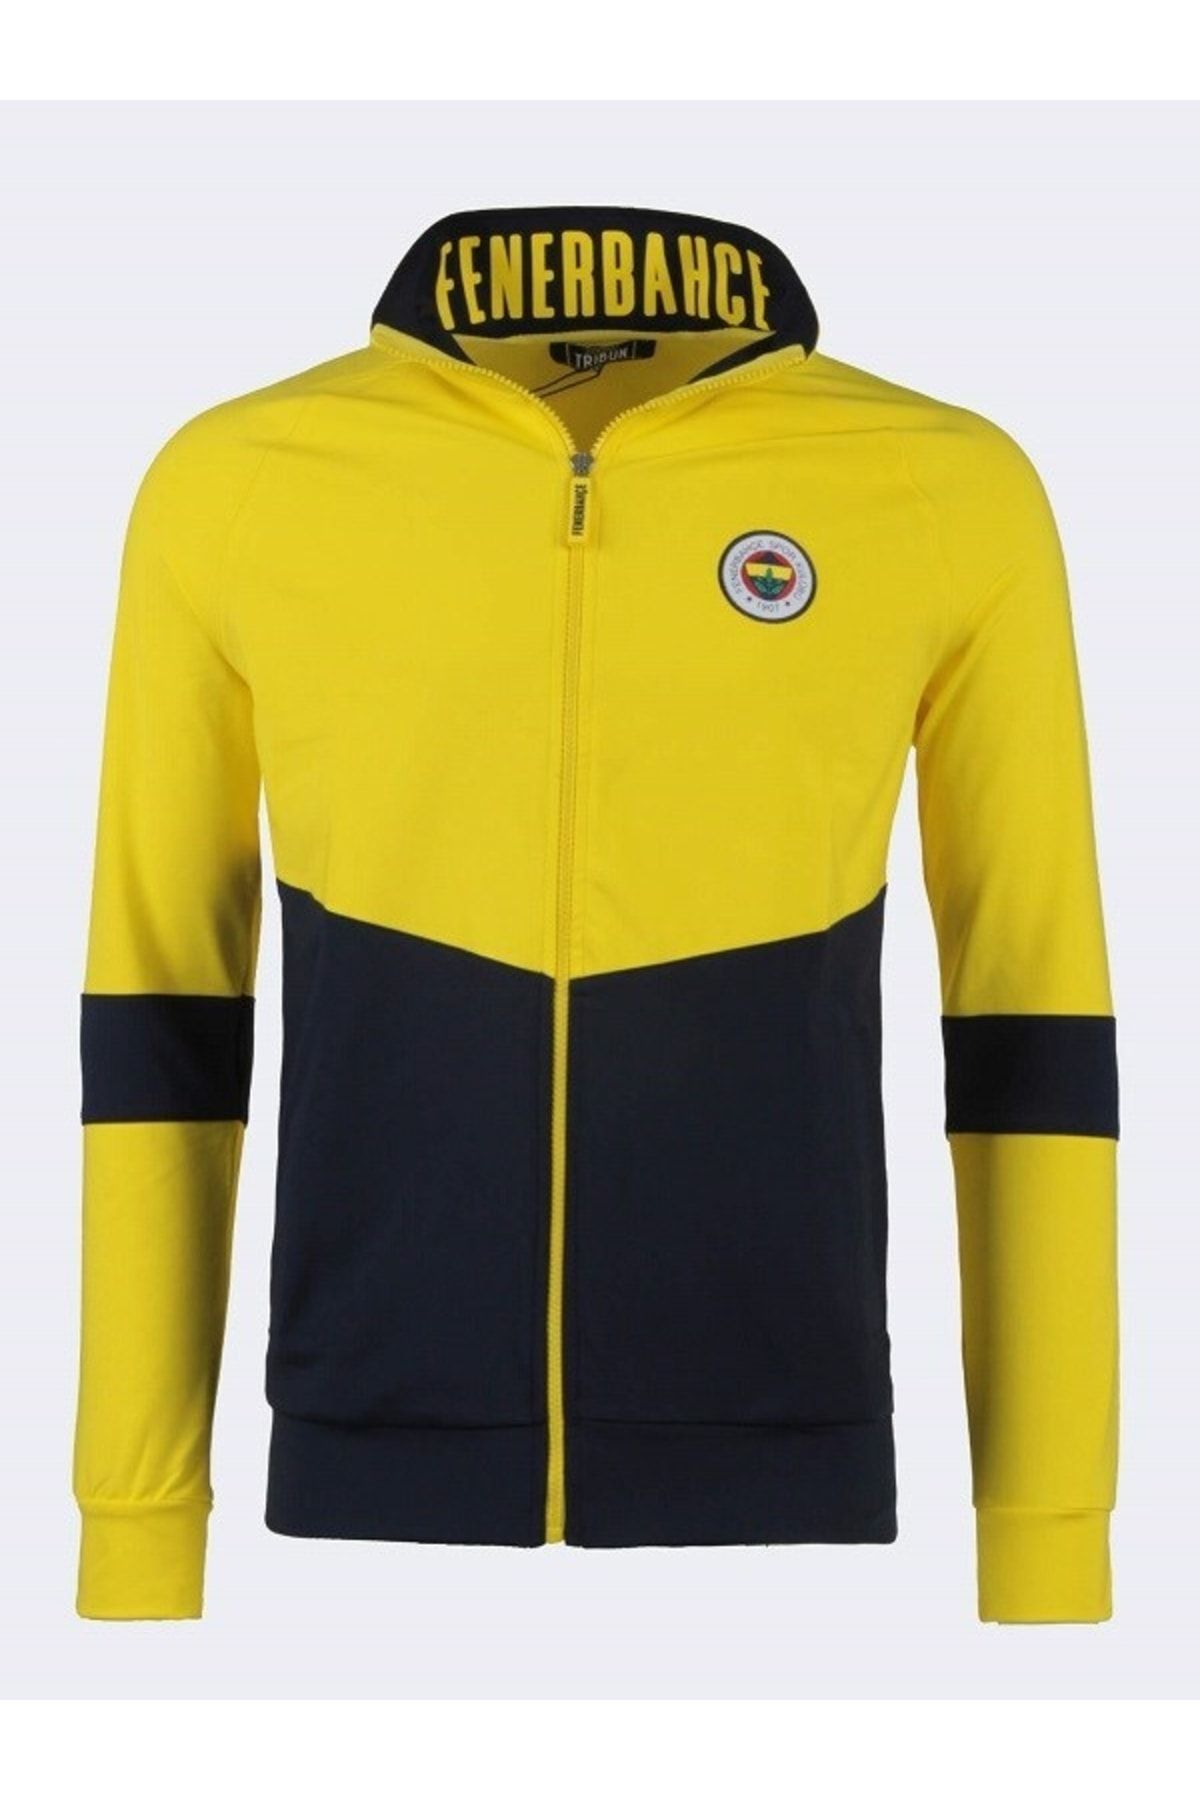 Fenerbahçe Orijinal Yeni Sezon Erkek Ceket